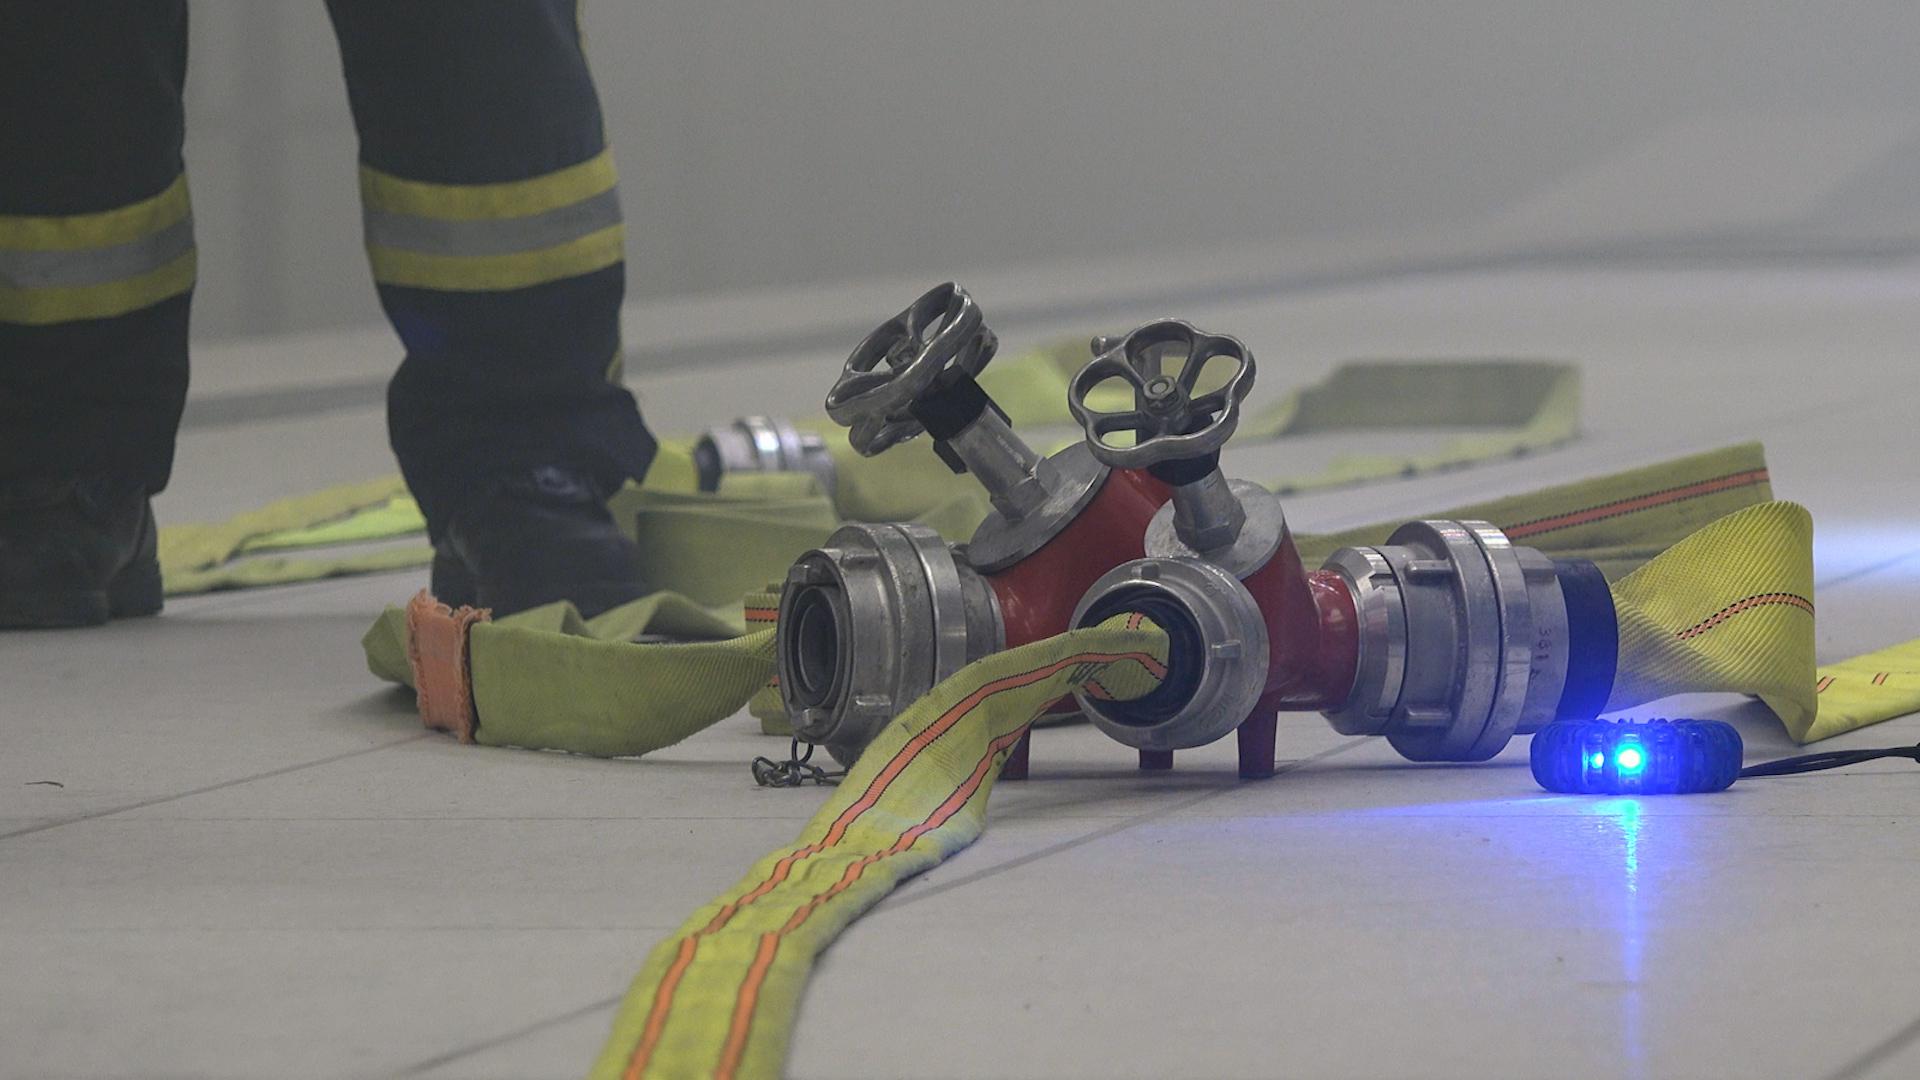 Blitzleuchten dienen den Feuerwehrleuten bei einem Brand mit viel Rauch als Orientierung. Blau bedeutet beispielsweise, dass hier ein Wasseranschluss ist.